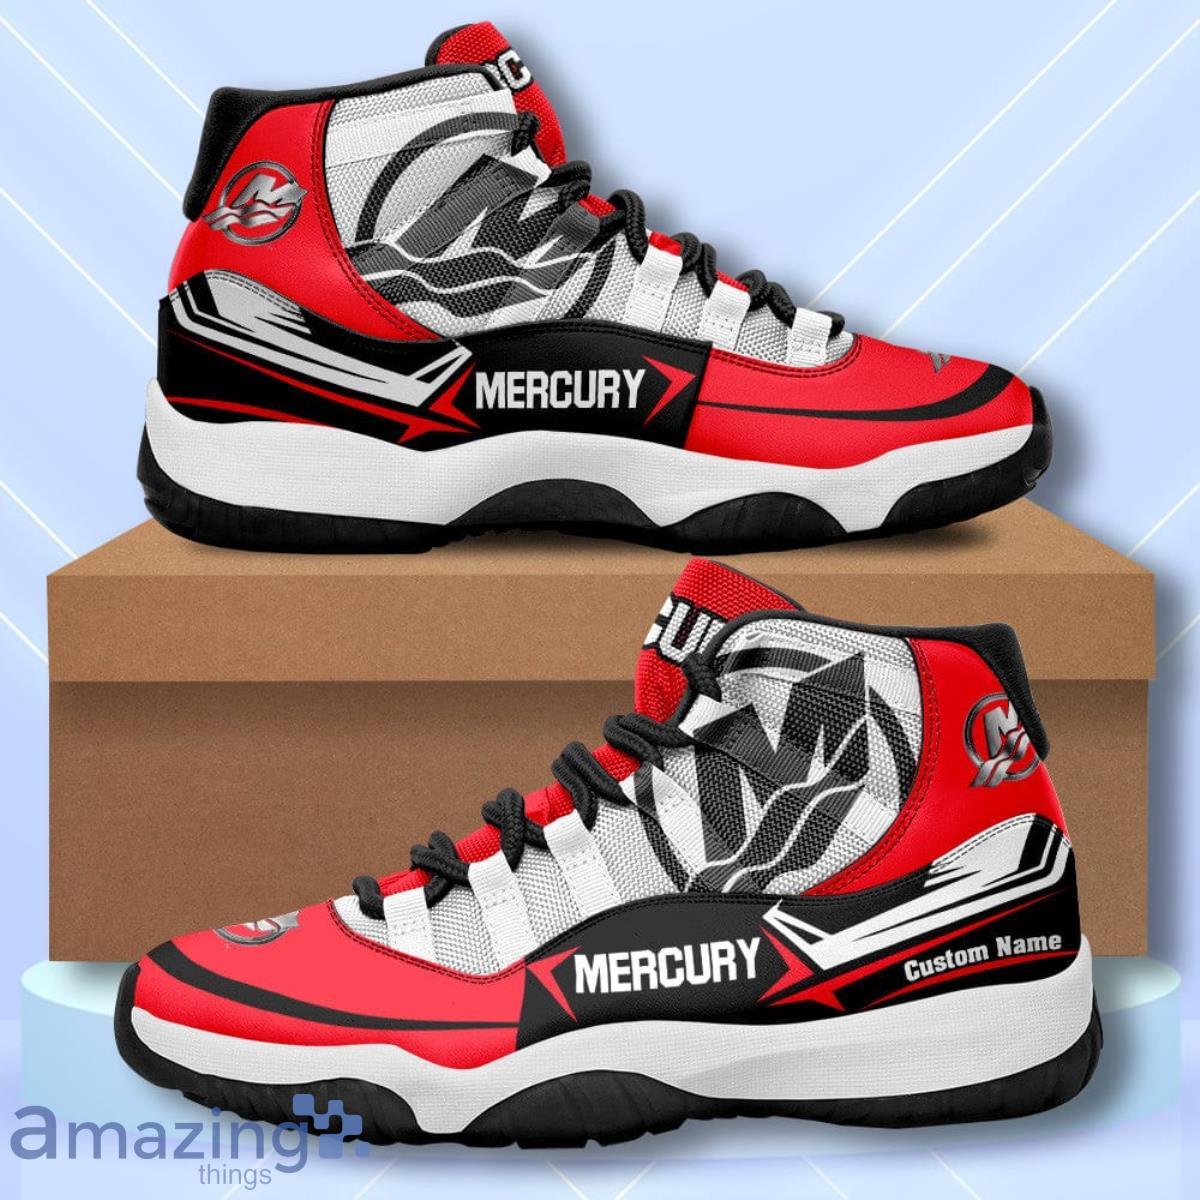 Shop Men's Mercury Shoes up to 80% Off | DealDoodle